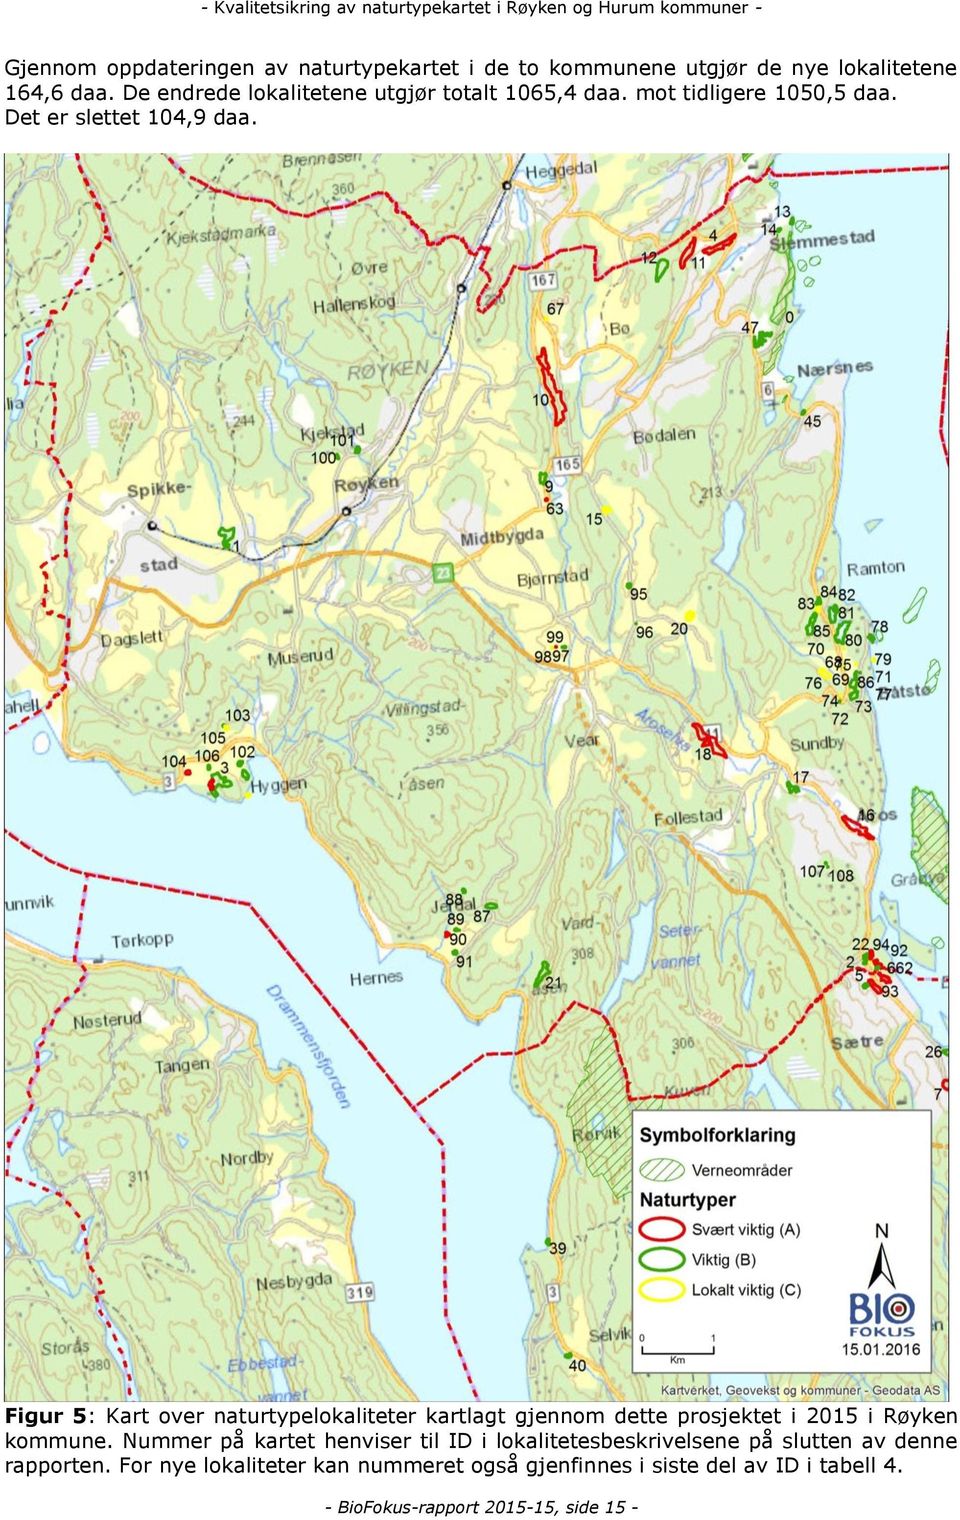 Figur 5: Kart over naturtypelokaliteter kartlagt gjennom dette prosjektet i 2015 i Røyken kommune.